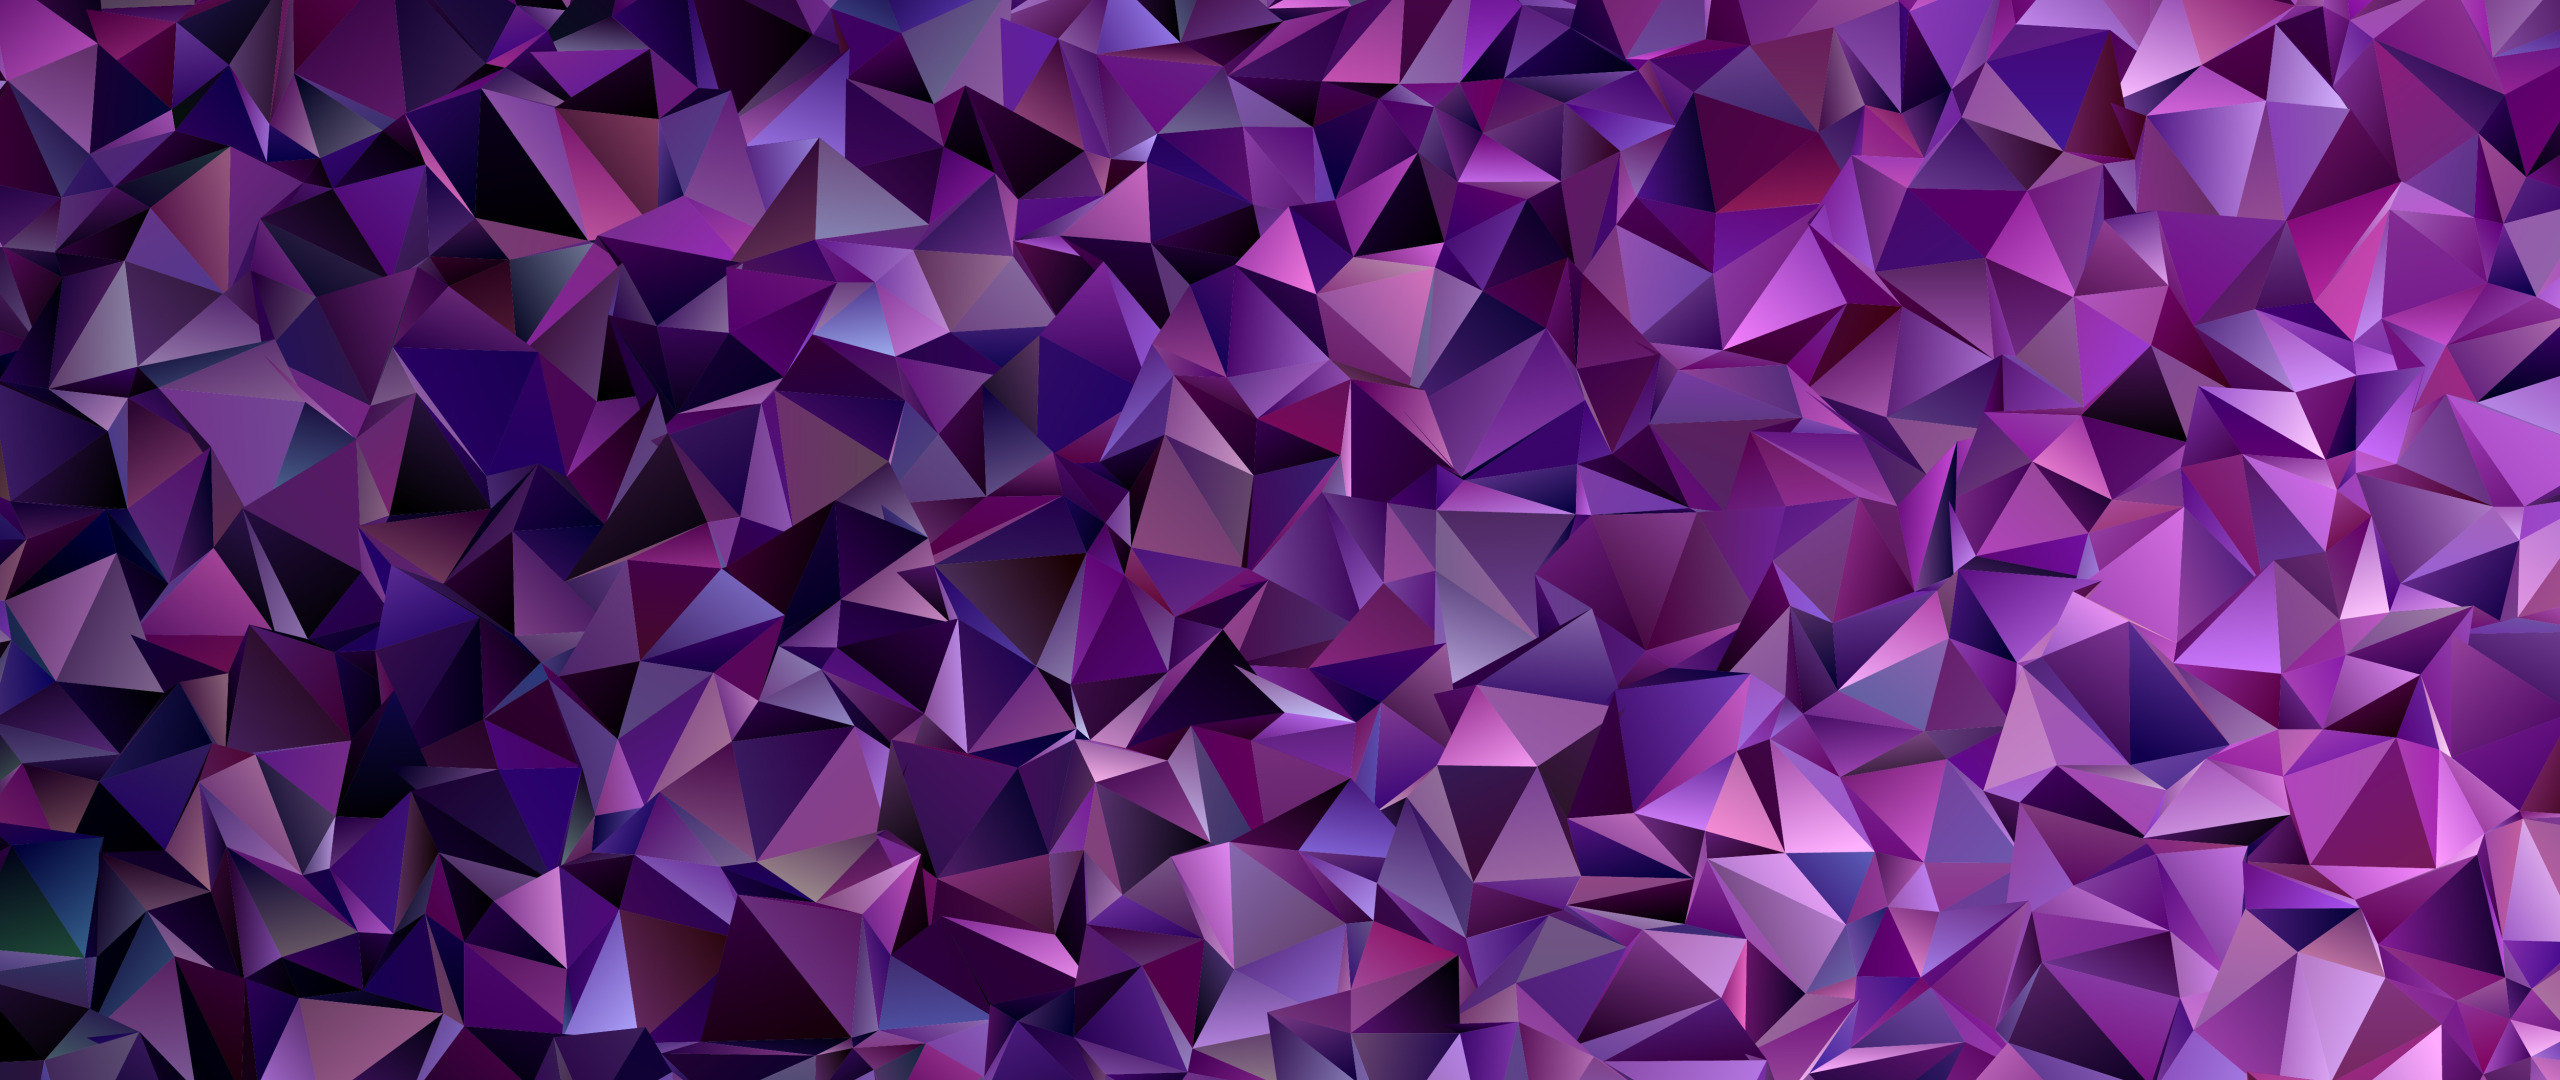 Abstract purple topographic. Фон геометрические фигуры. Фон абстракция. Лиловый треугольник. Фиолетовые полигоны.